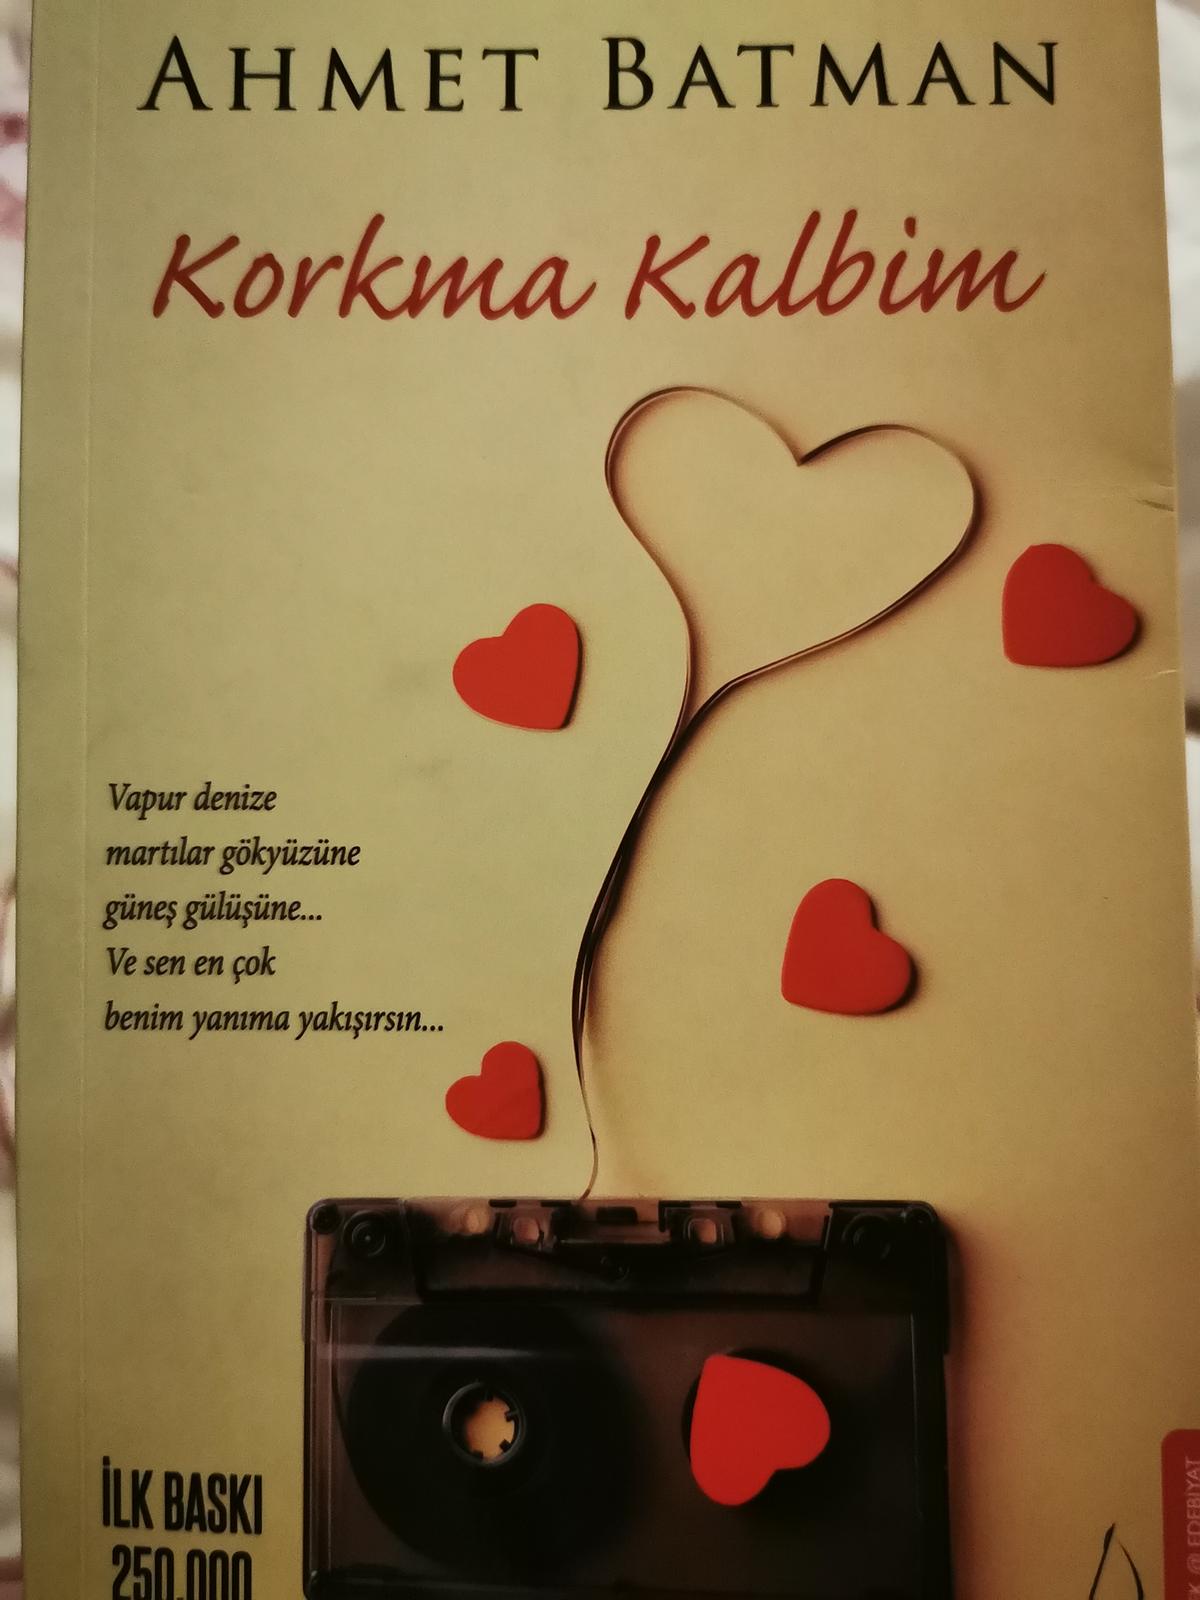 Buch von Ahmet Batman, Korkma Kalbim